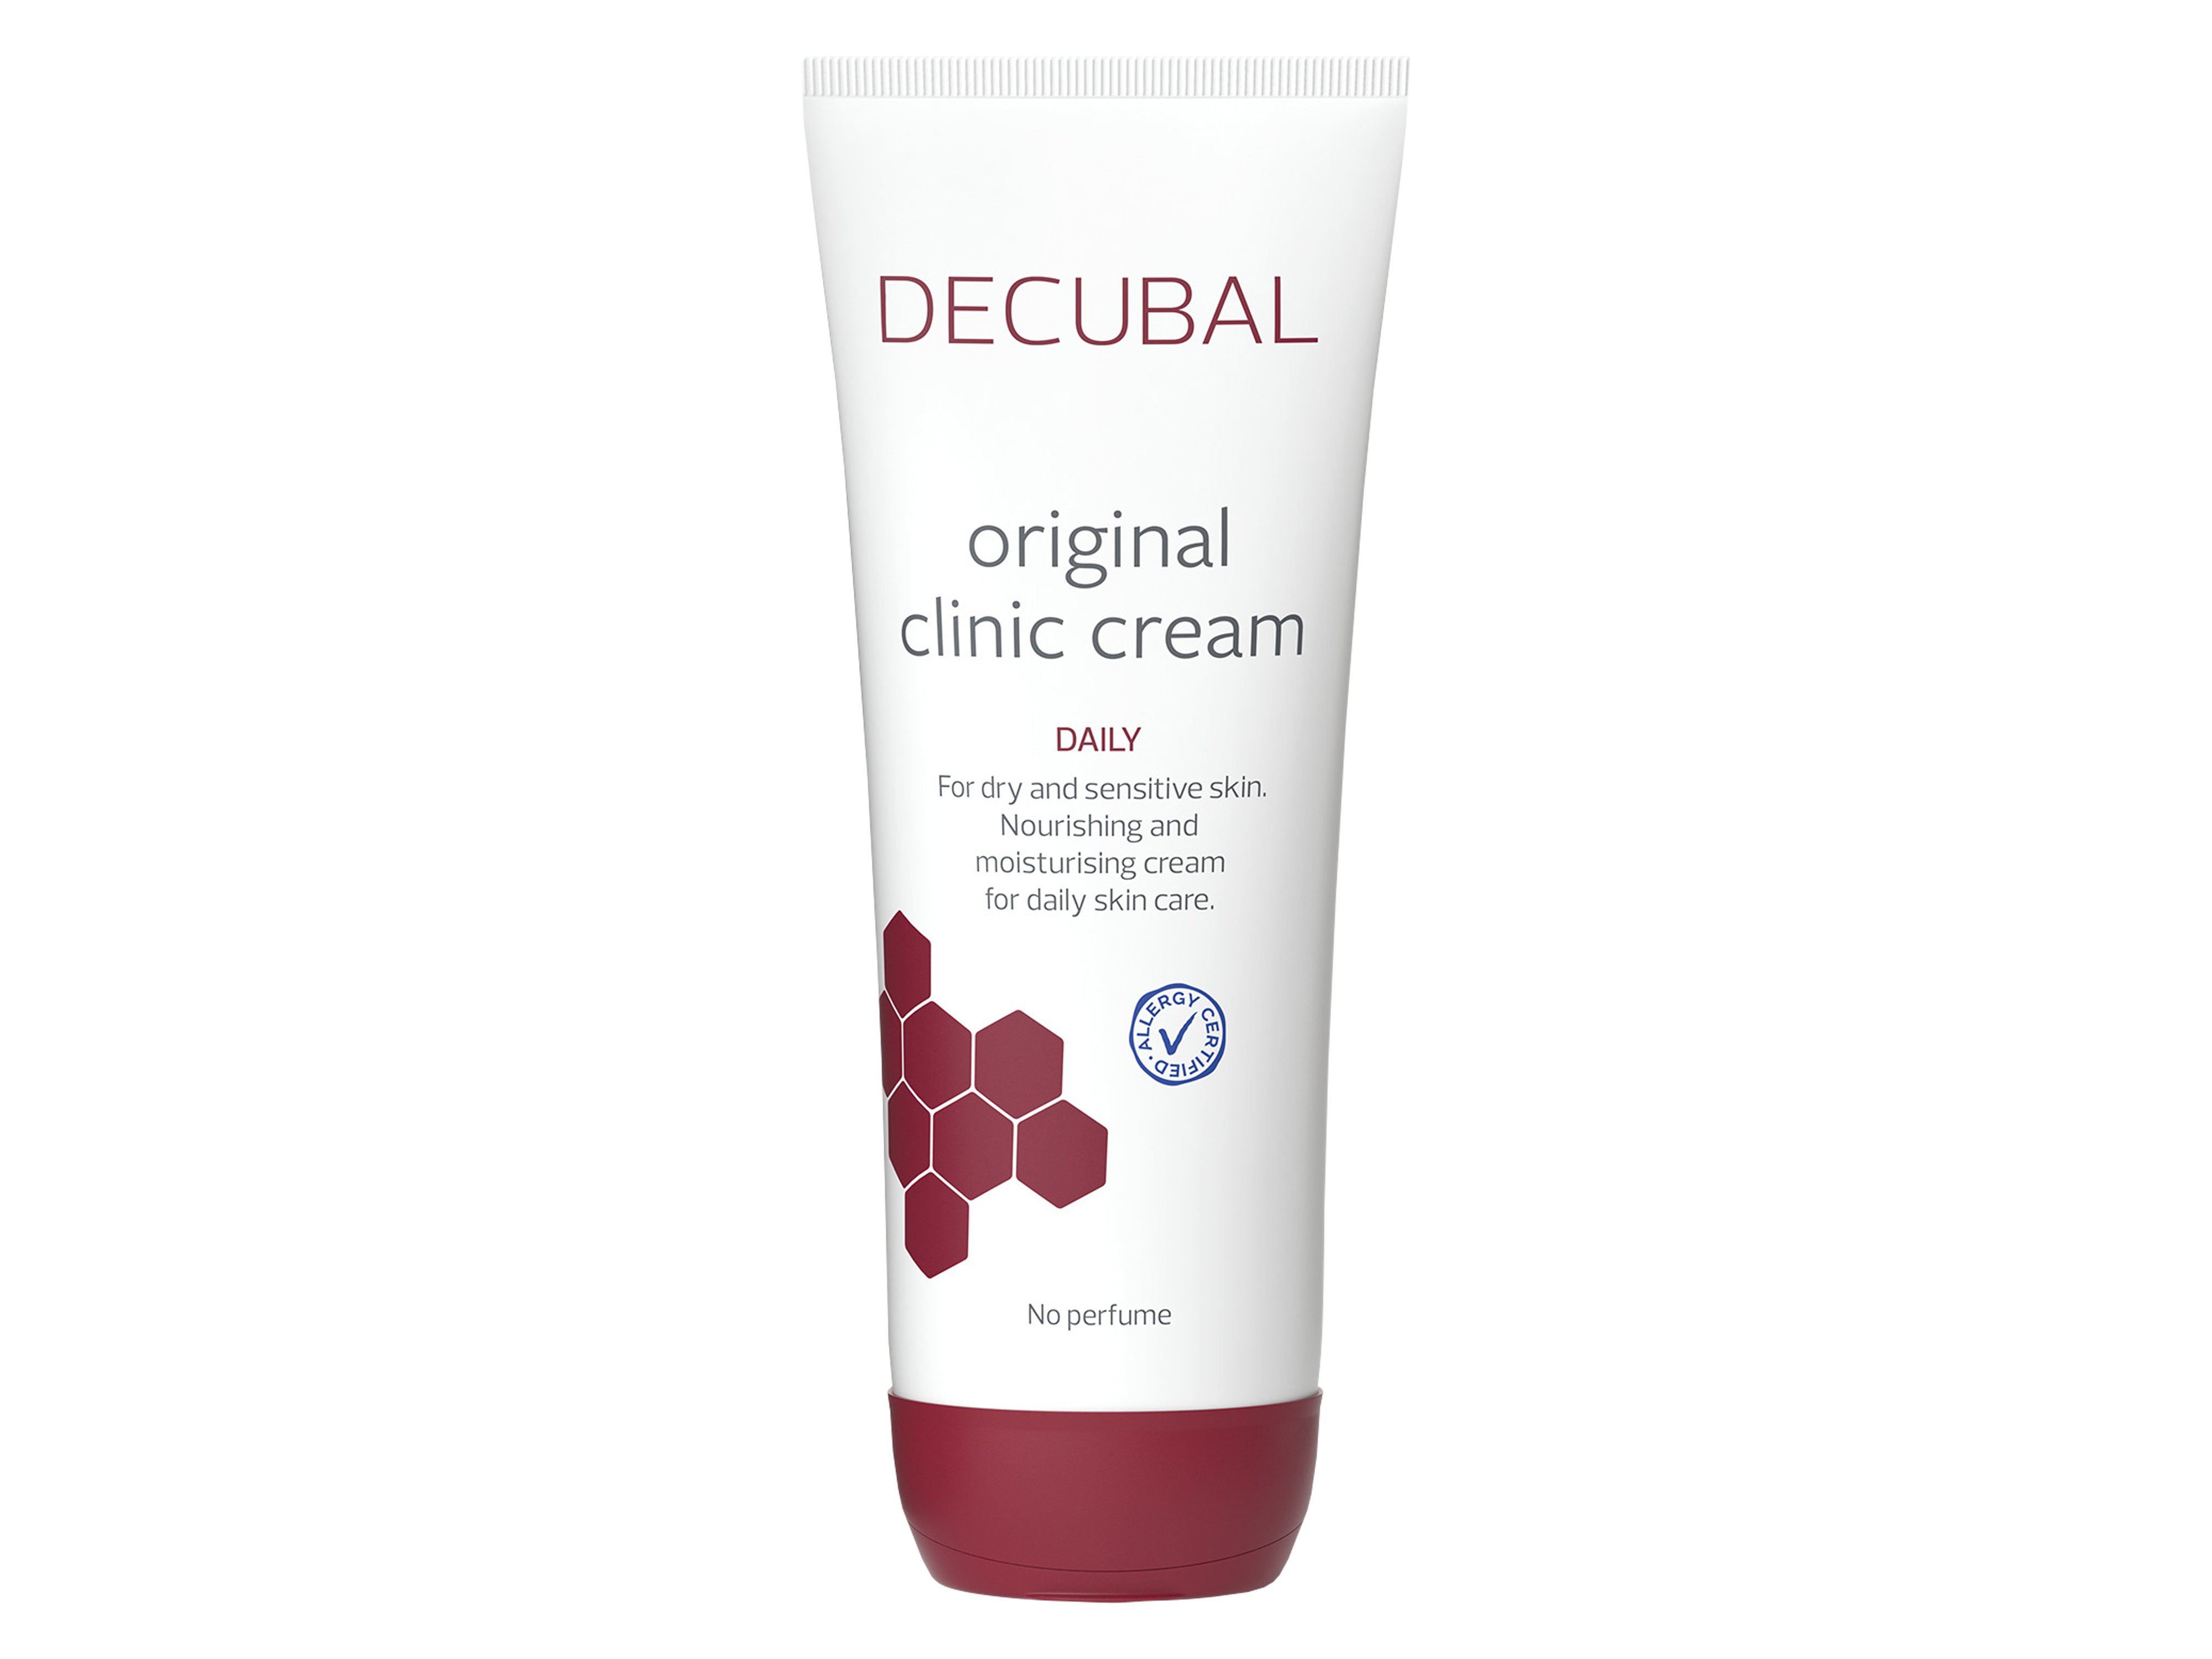 Decubal Original Clinic Cream Daily, 250 g